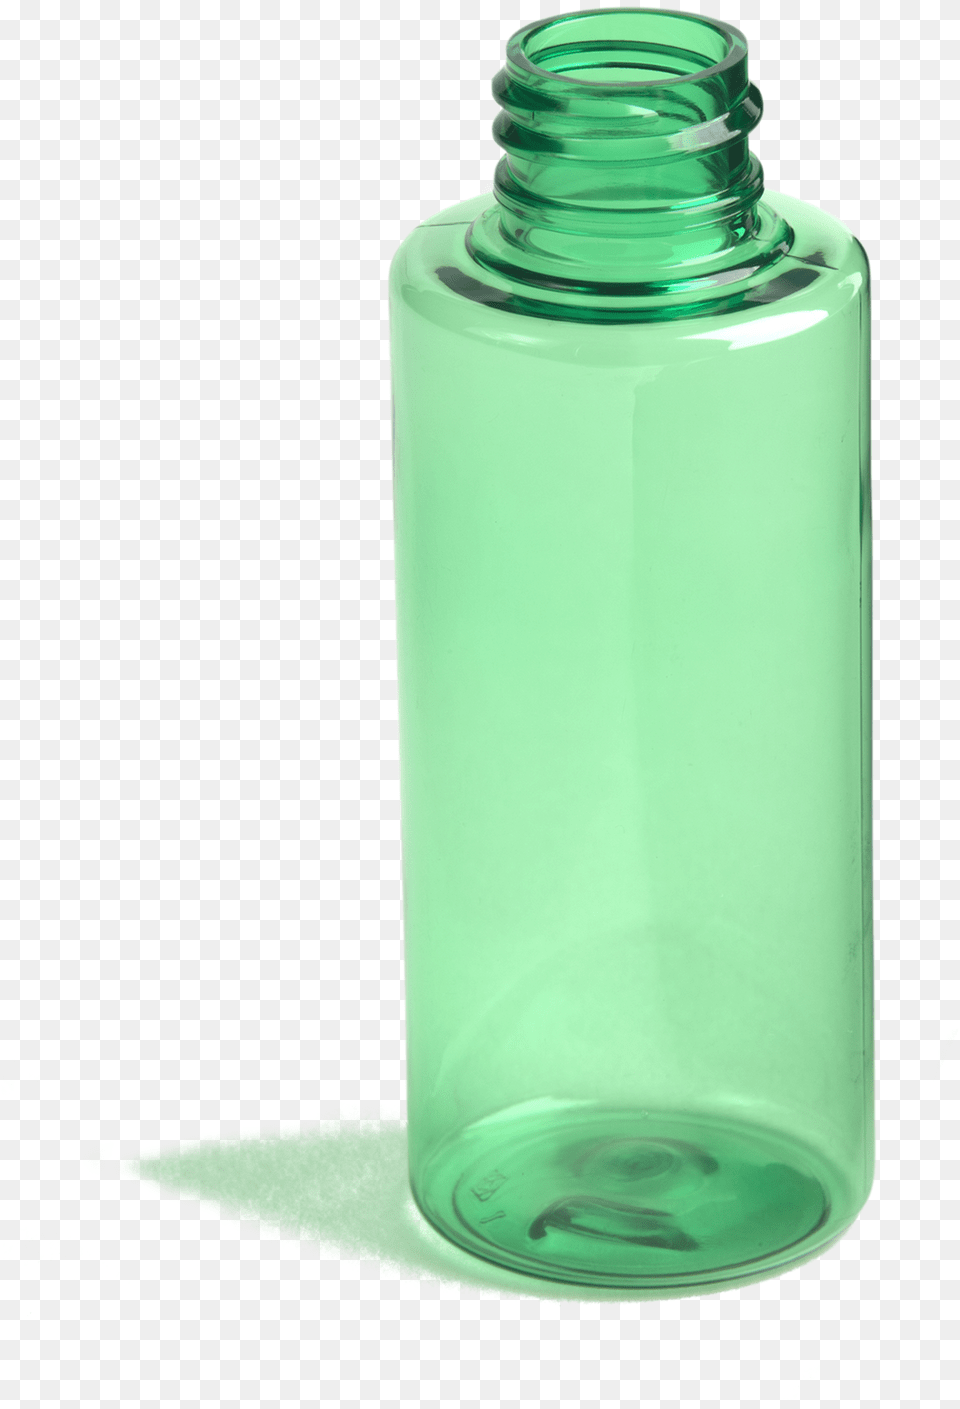 Oz Cylindrical Vial Glass Bottle, Jar, Shaker, Water Bottle Png